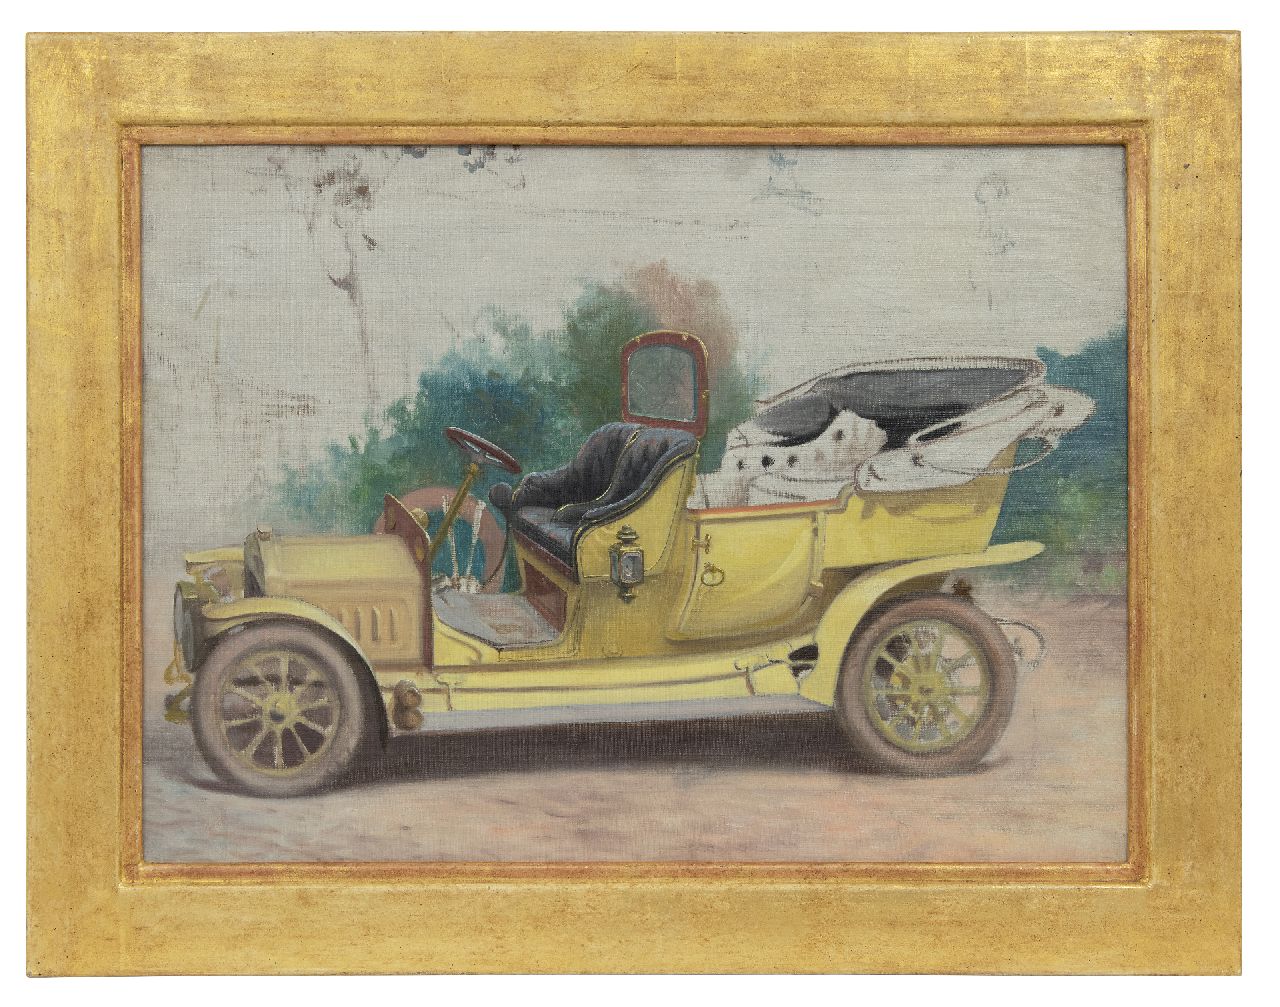 Onbekend   | Onbekend | Schilderijen te koop aangeboden | Antieke auto, olieverf op doek 48,1 x 66,0 cm